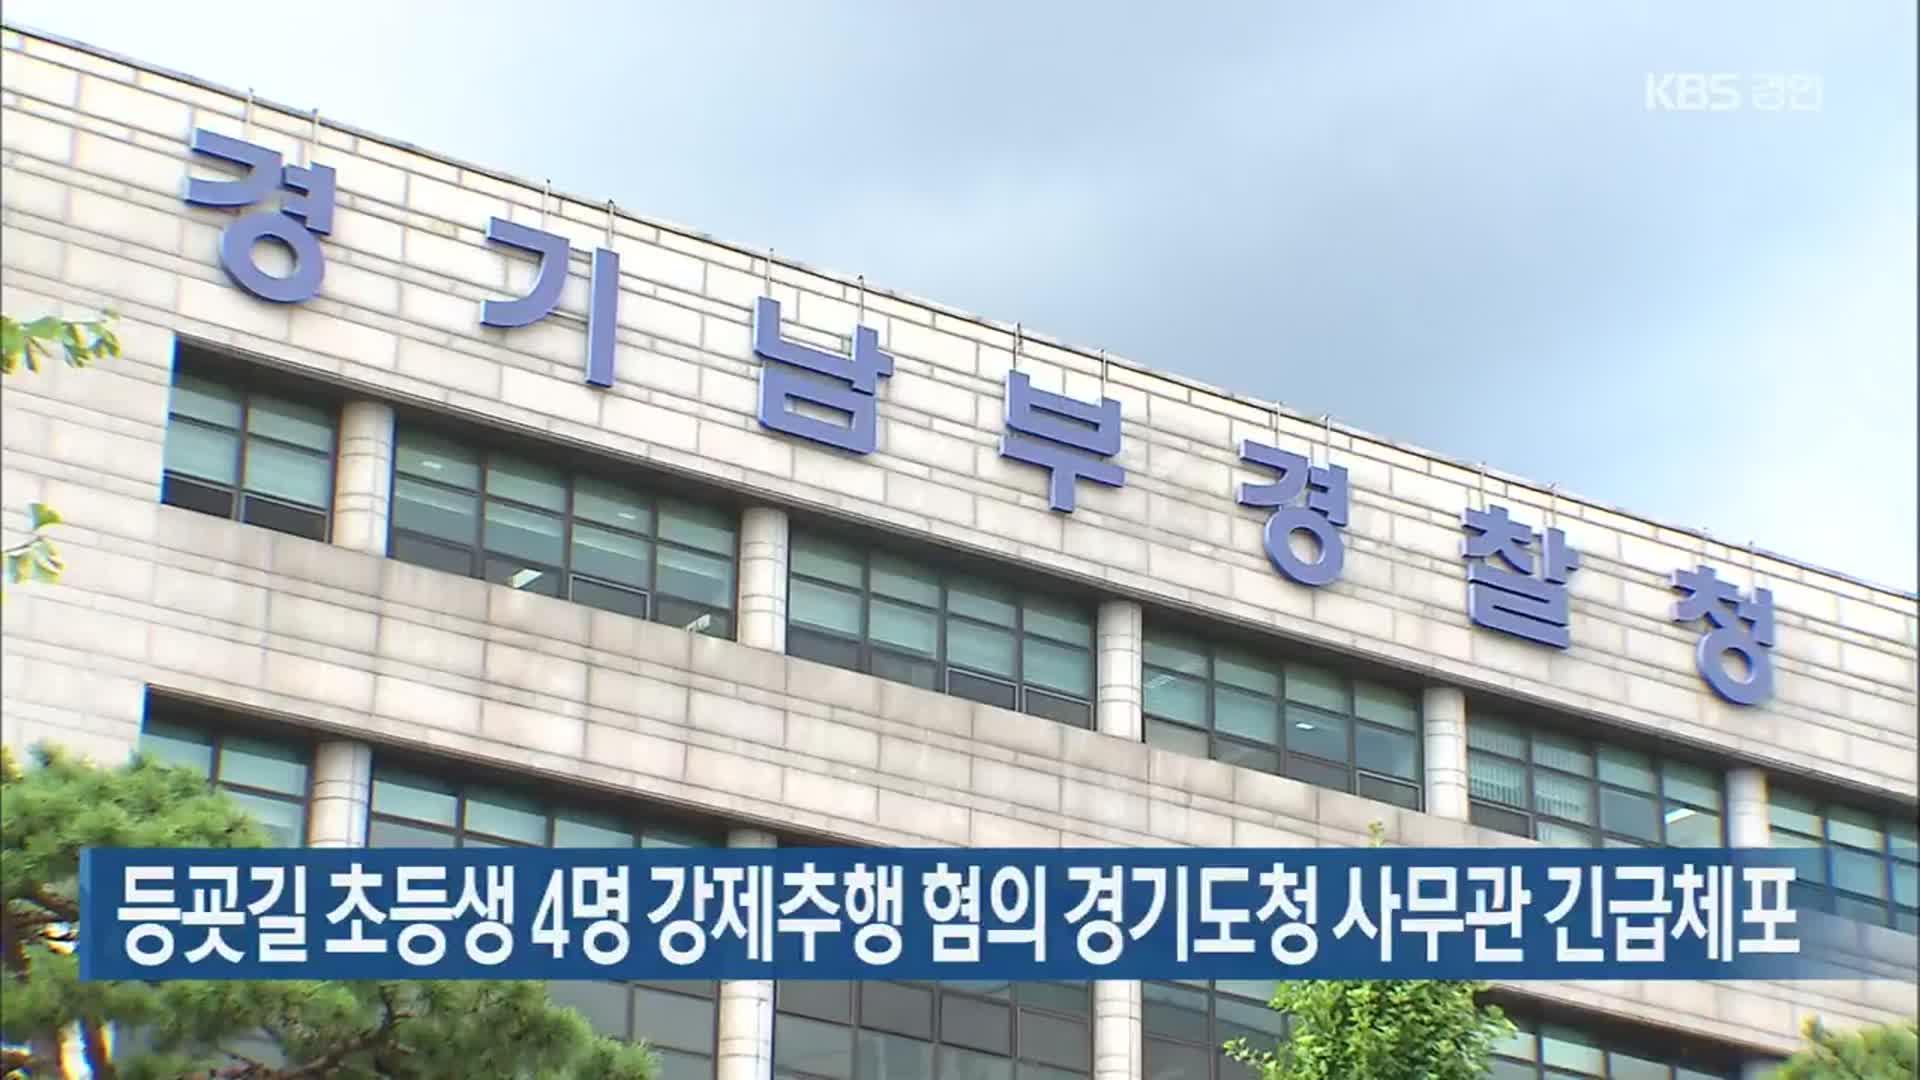 등굣길 초등생 4명 강제추행 혐의 경기도청 사무관 긴급체포